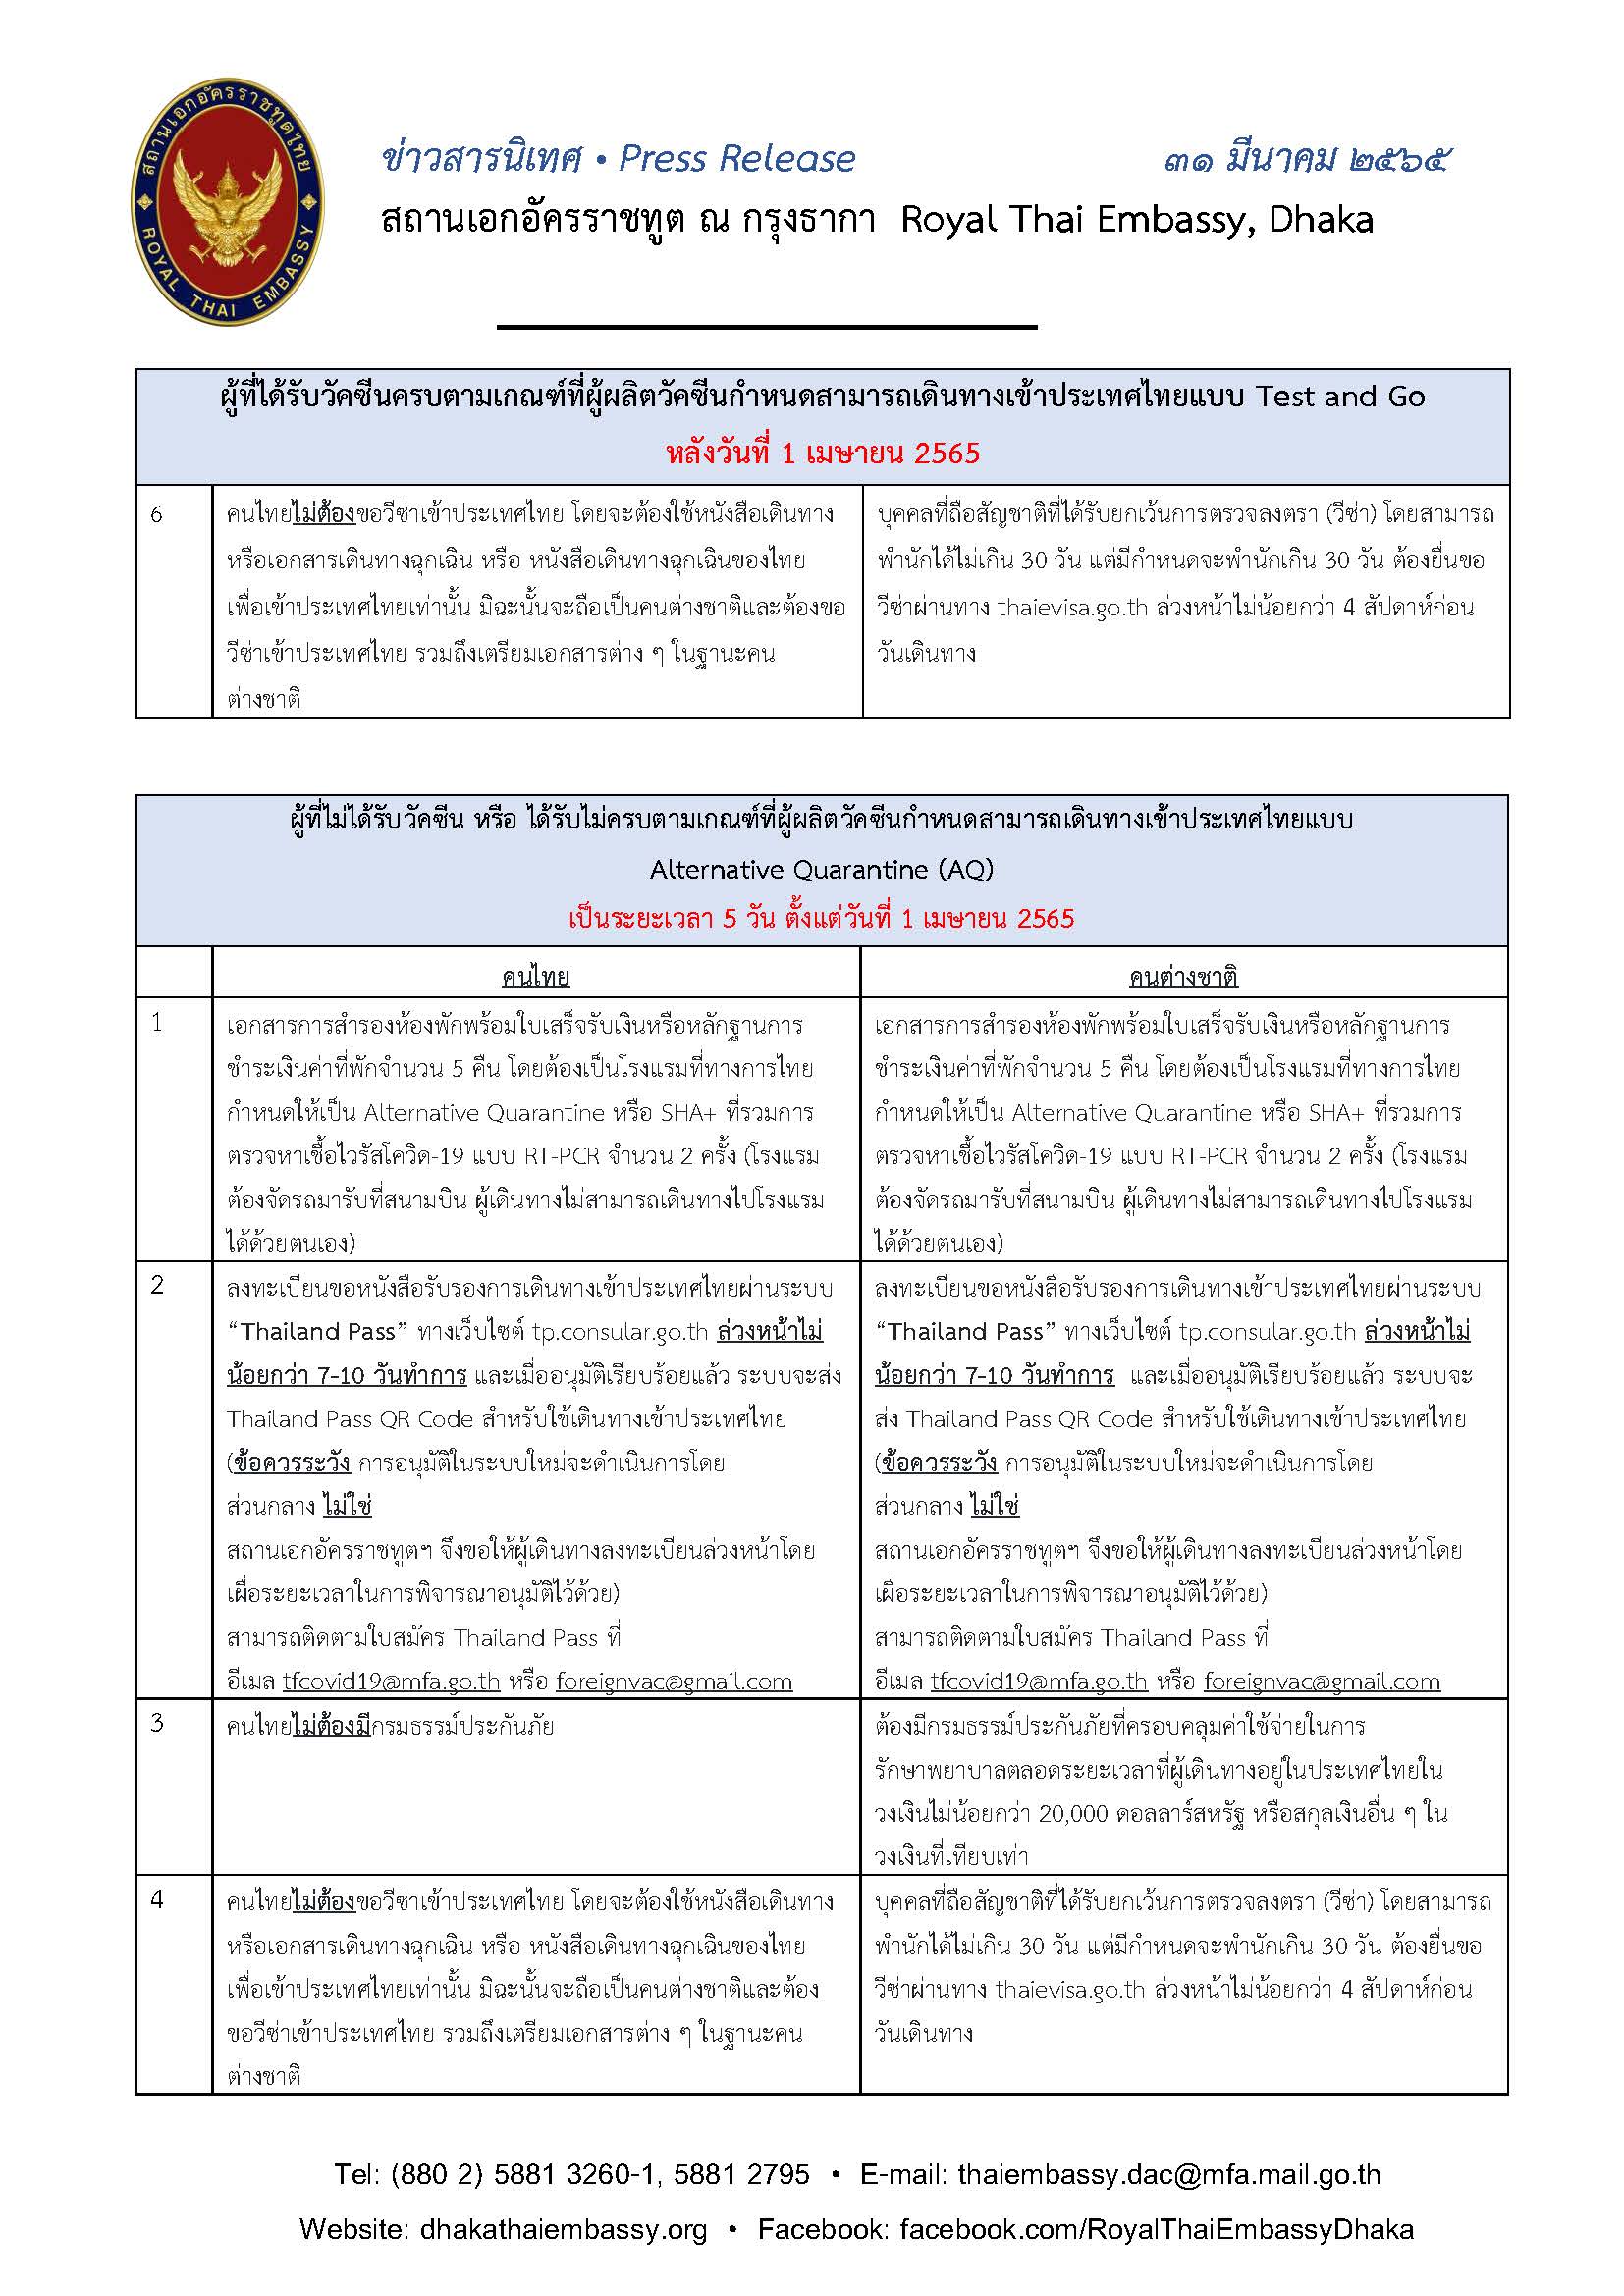 65.03.31_ข่าวสารนิเทศมาตรการเข้าไทย_(ไทย)_Page_2